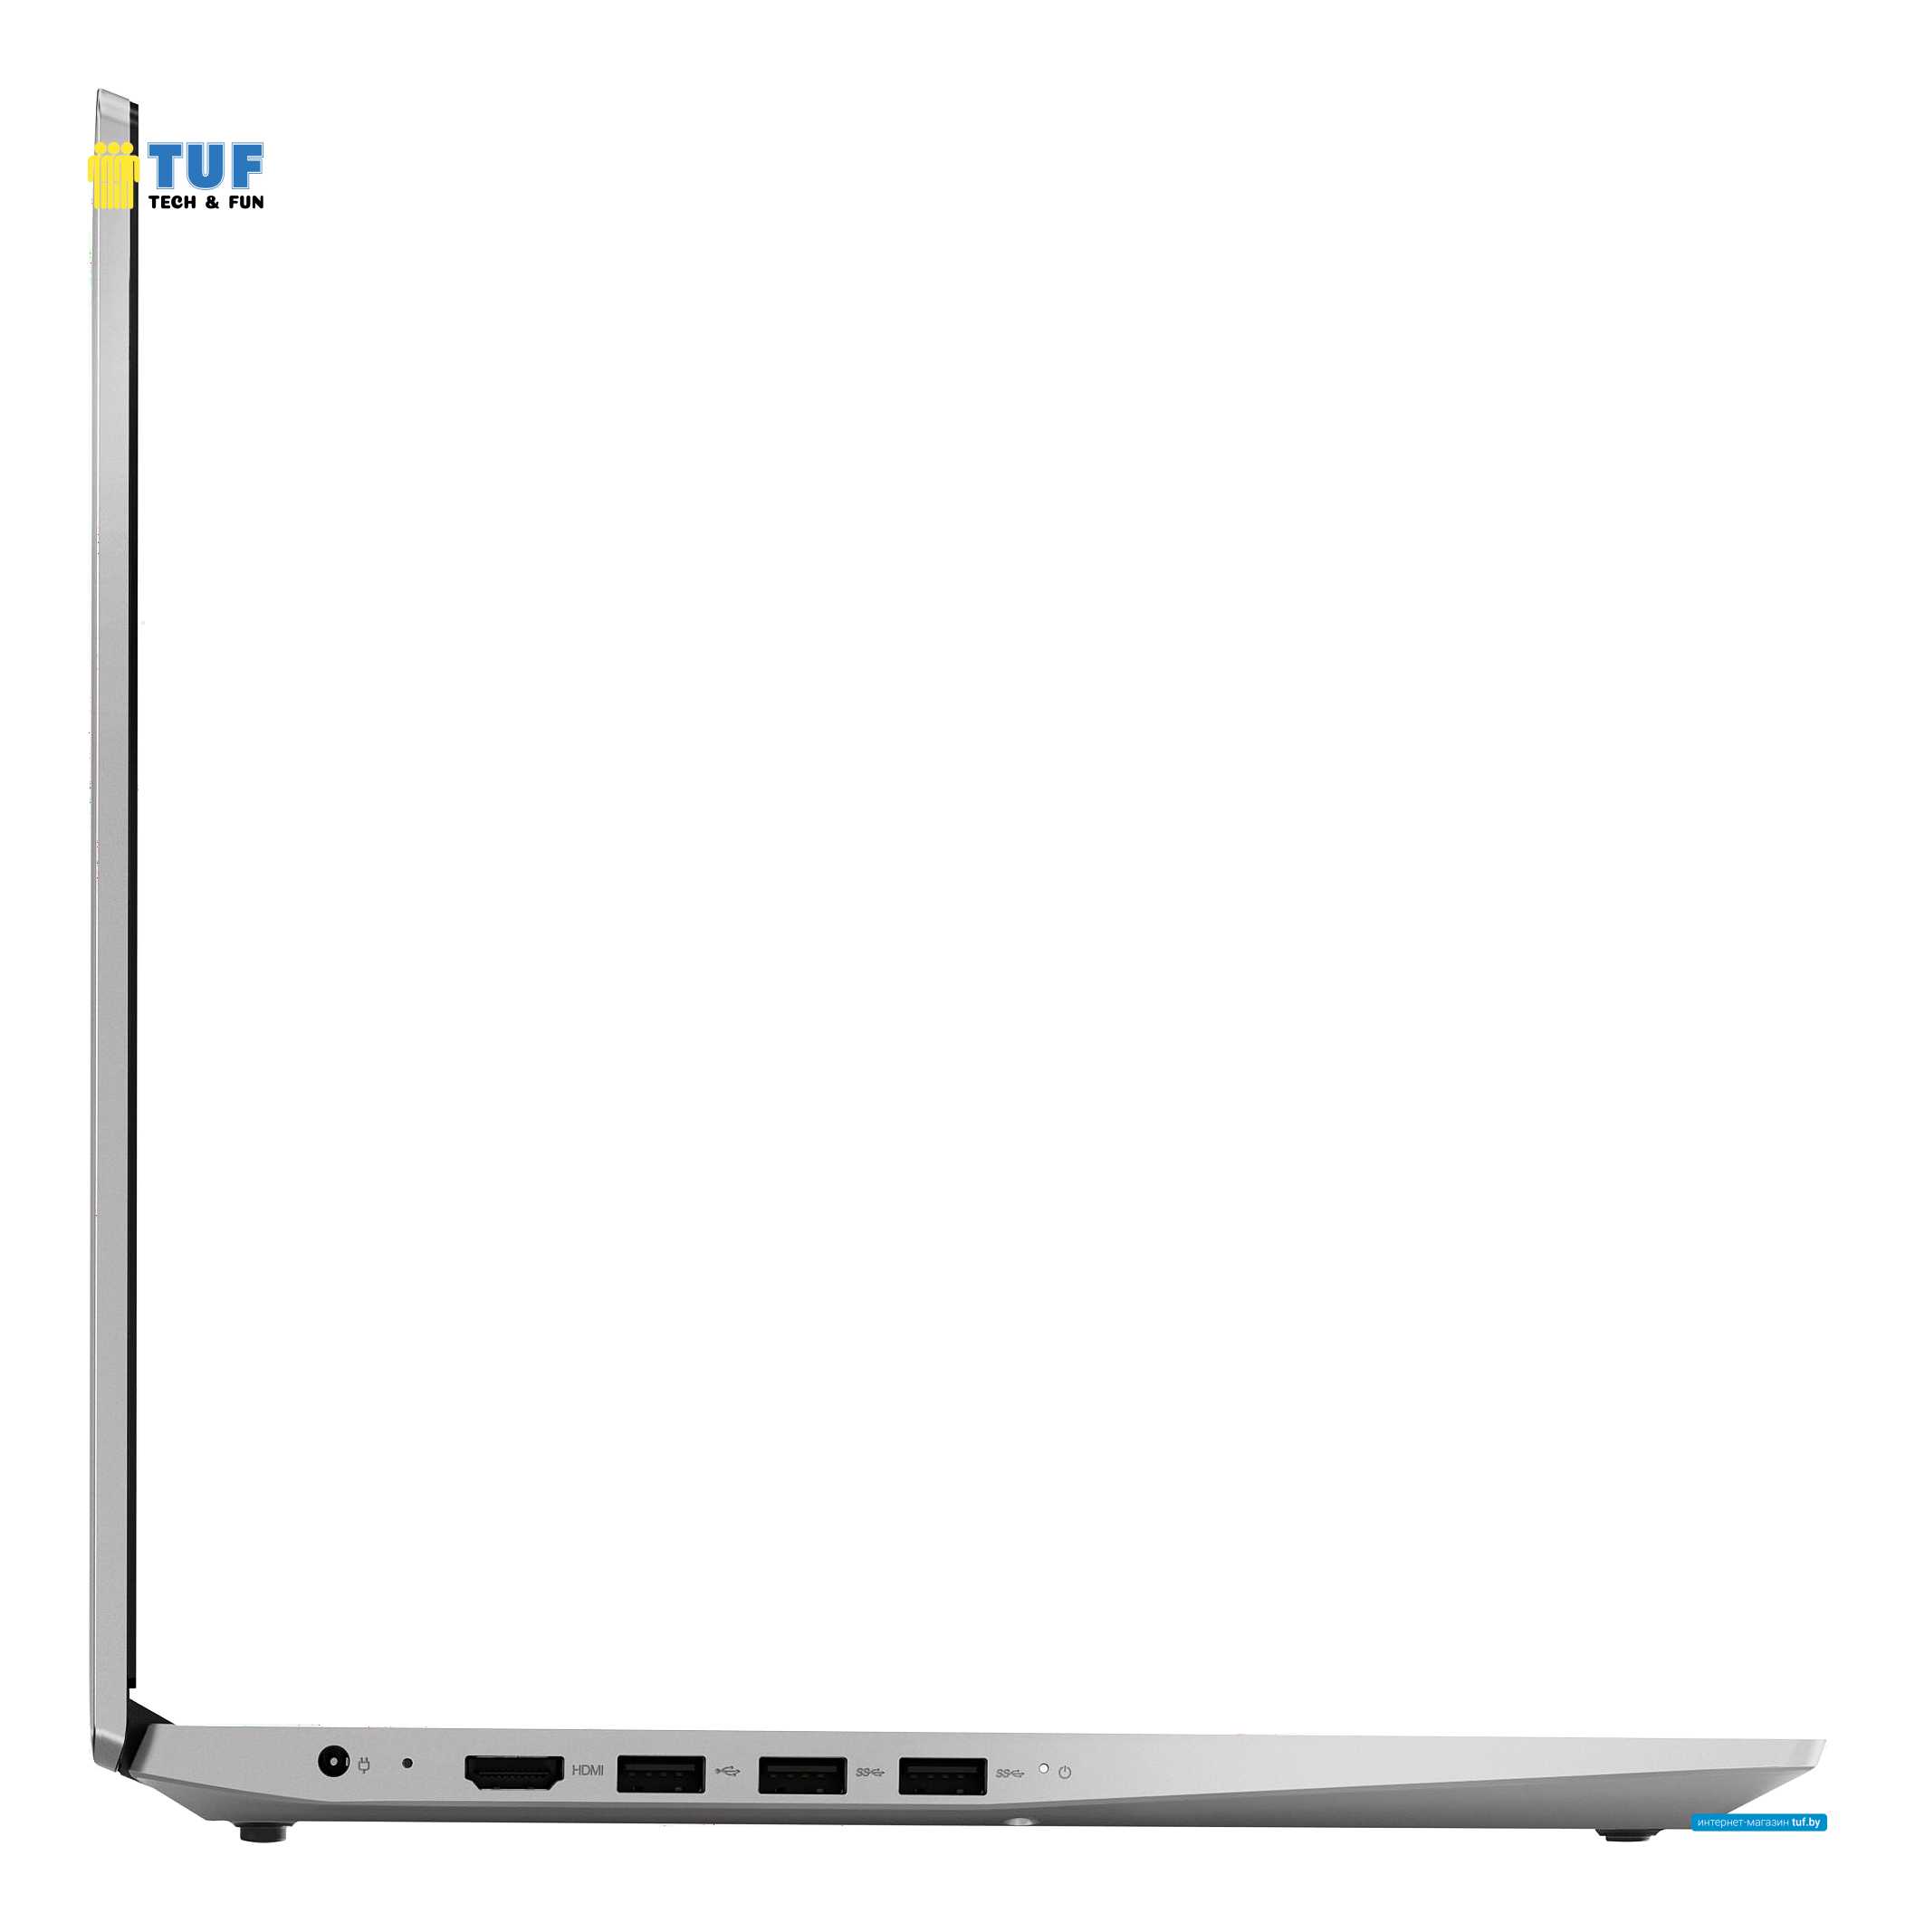 Ноутбук Lenovo IdeaPad S145-15API 81UT0072RE